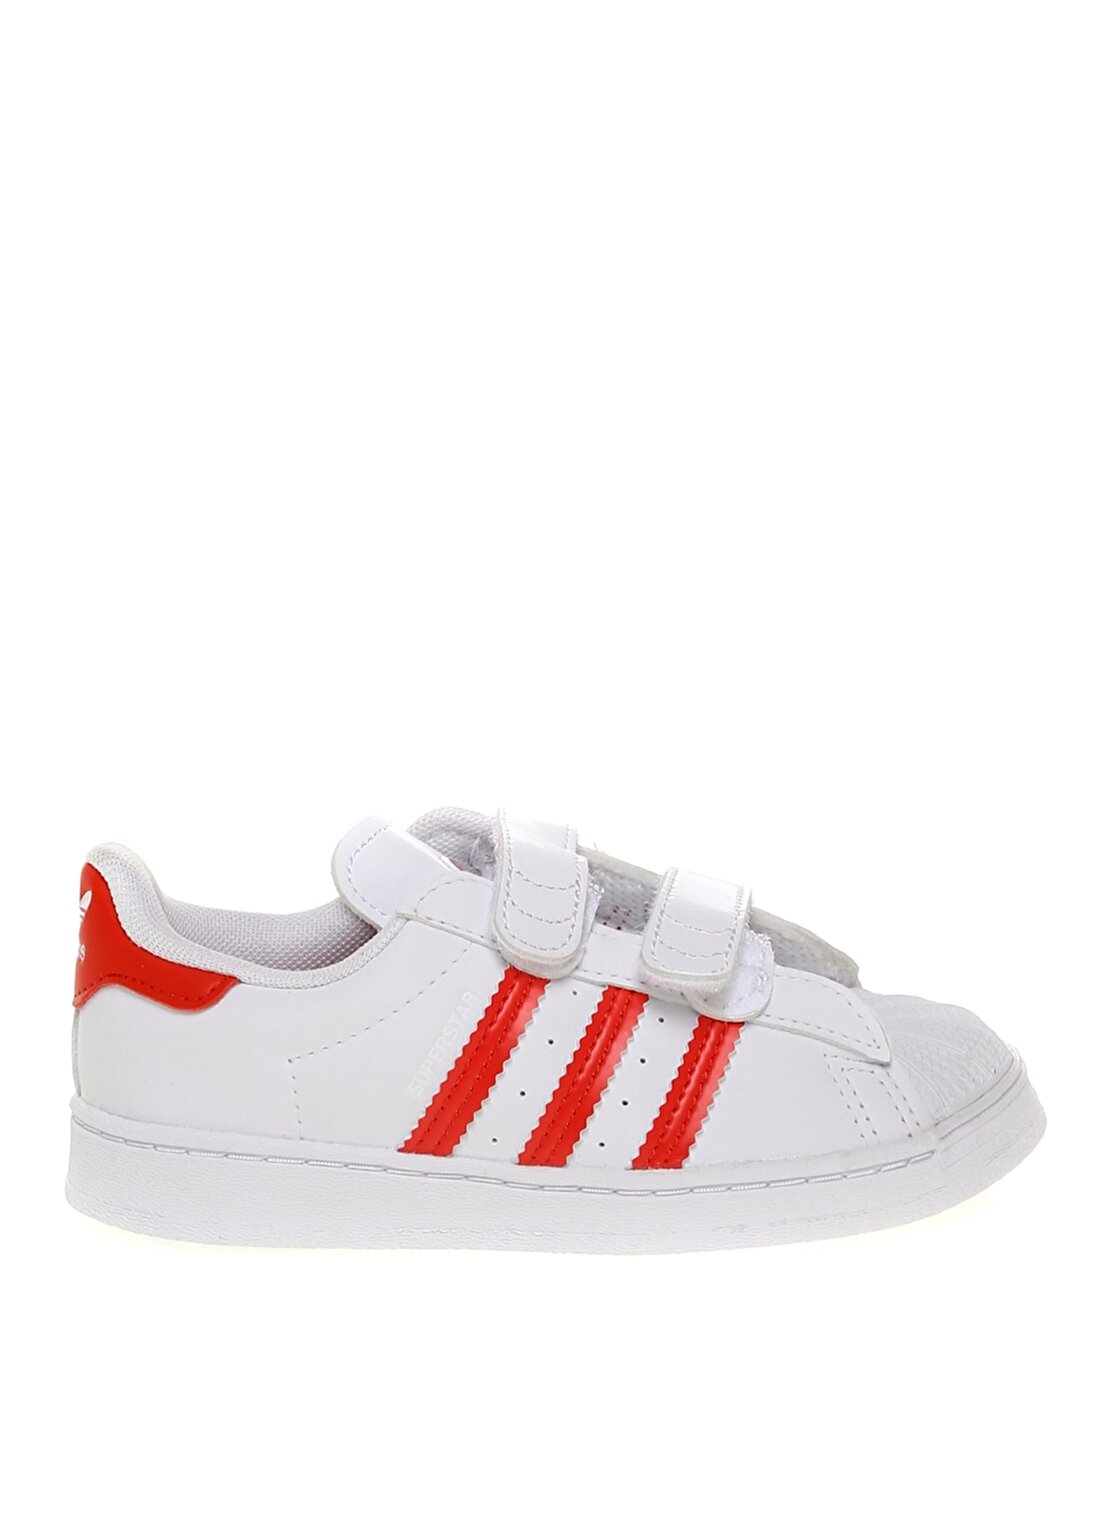 Adidas FZ0644 Superstar CF I Bantlı Beyaz Kırmızı Erkek Çocuk Yürüyüş Ayakkabısı